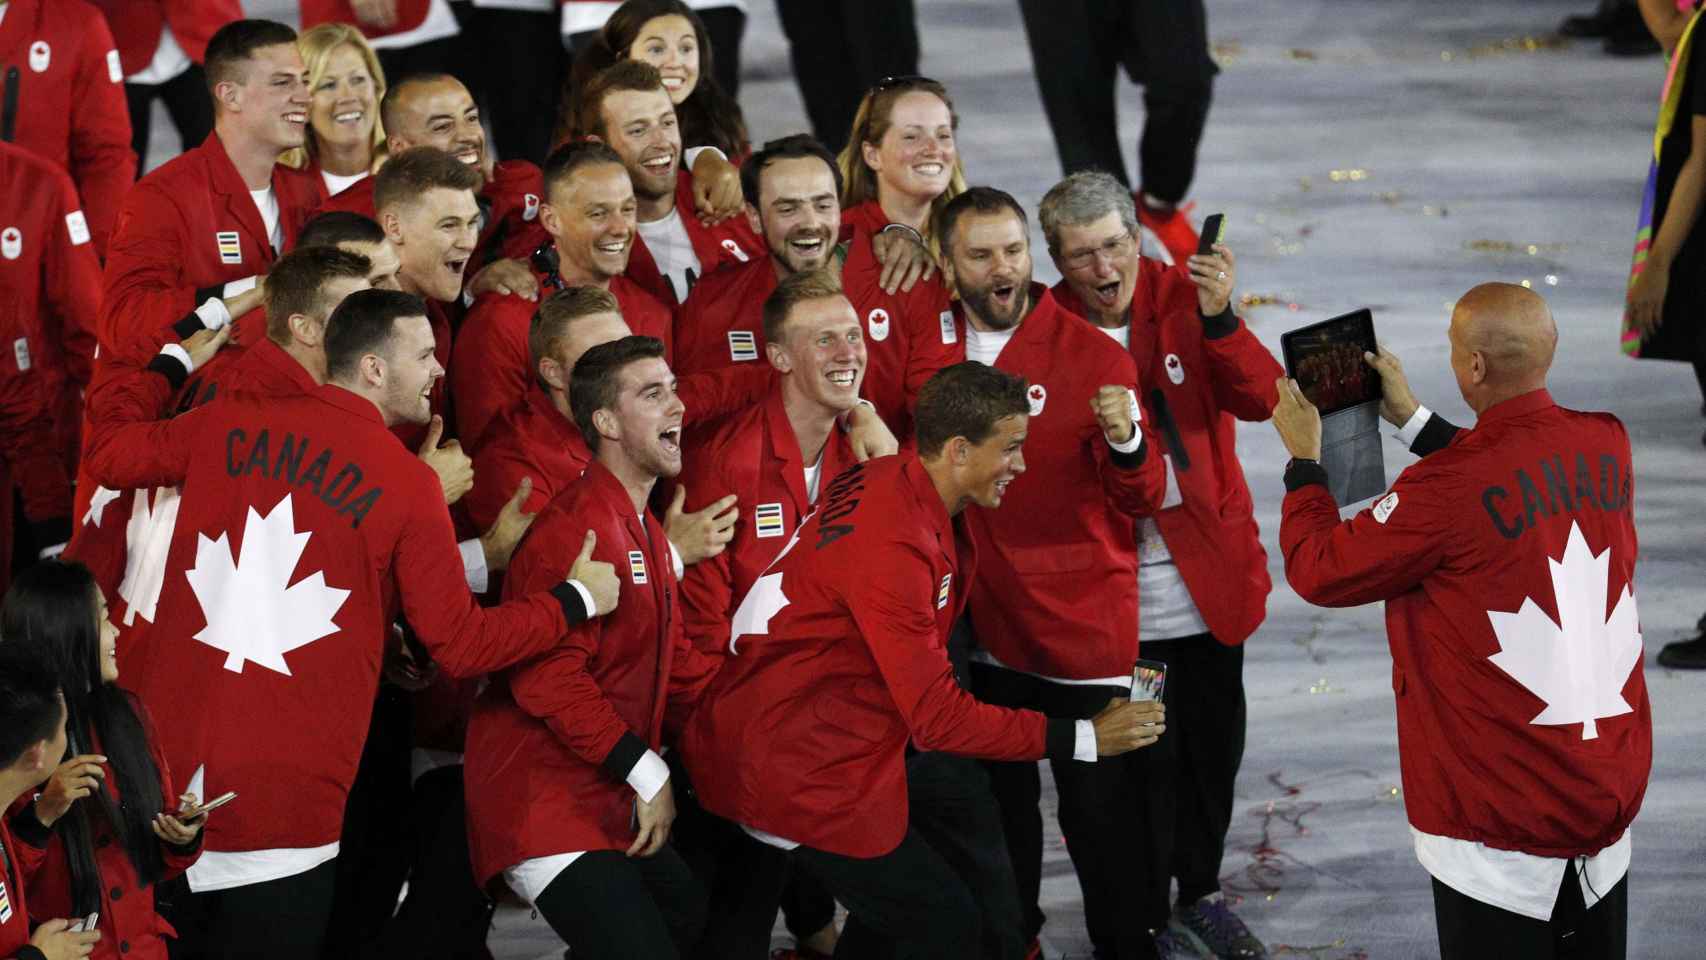 Los atletas canadienses posan sonrientes para una foto